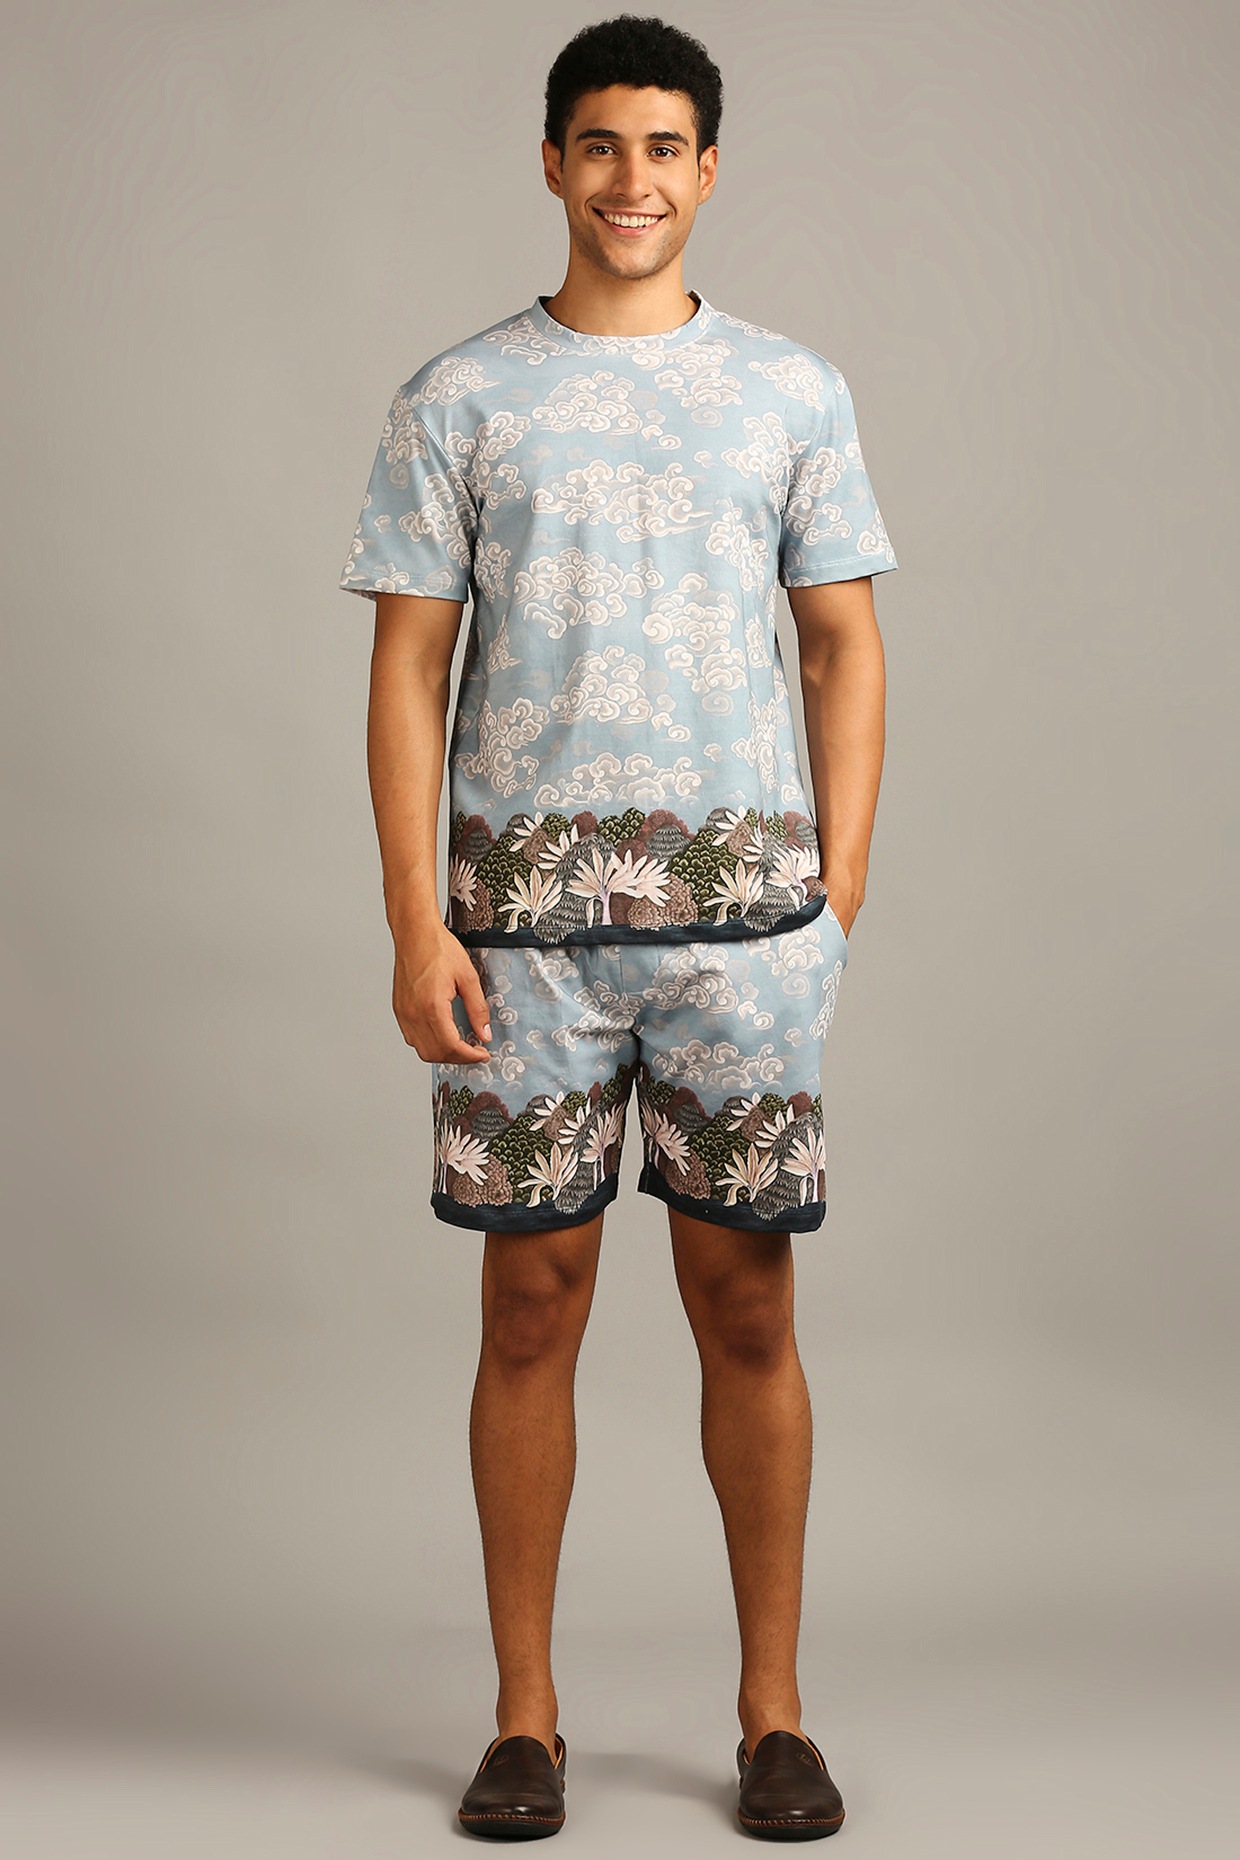 Men's Holiday Clothes | Summer Shirts, Shorts & Outfits | ASOS